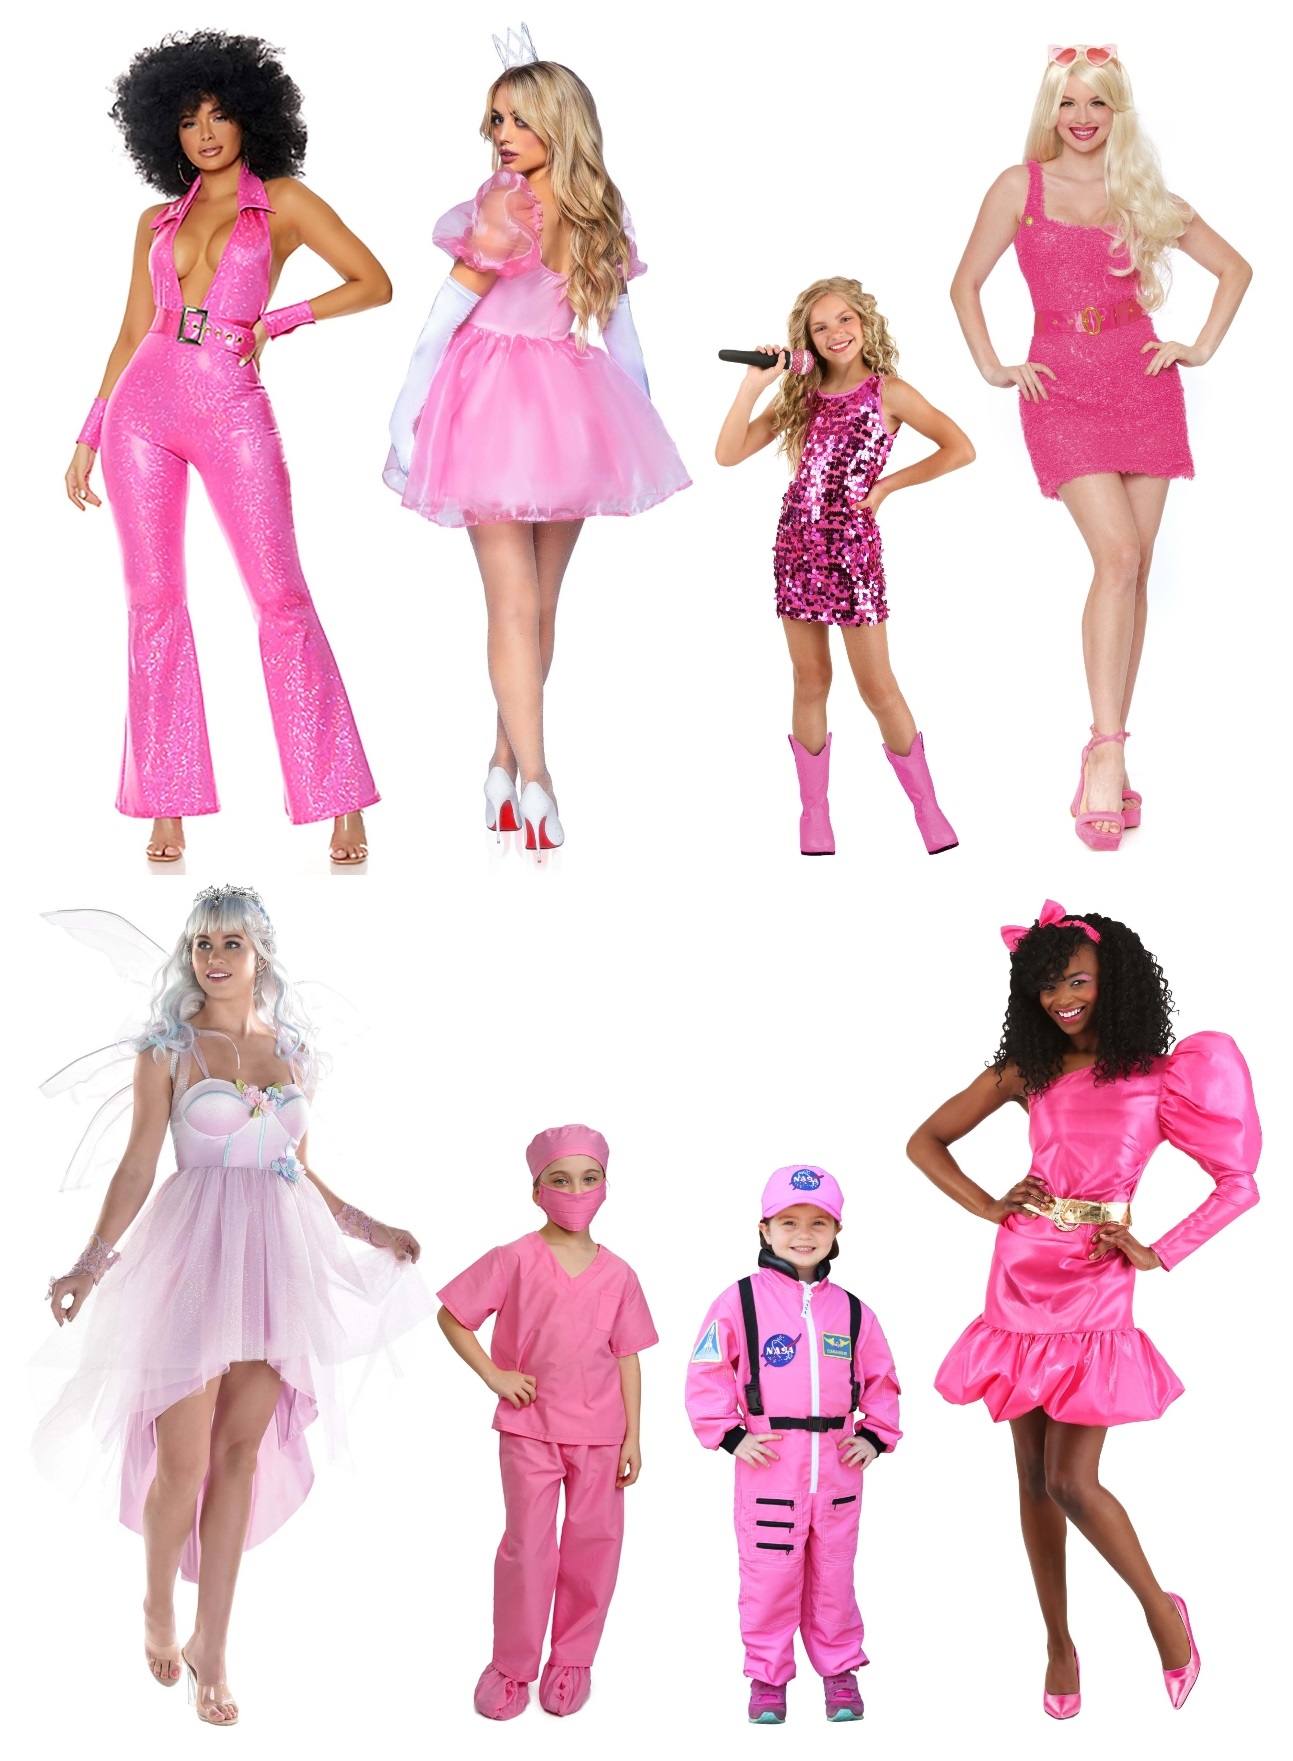 Aerobics Barbie Dog Costume